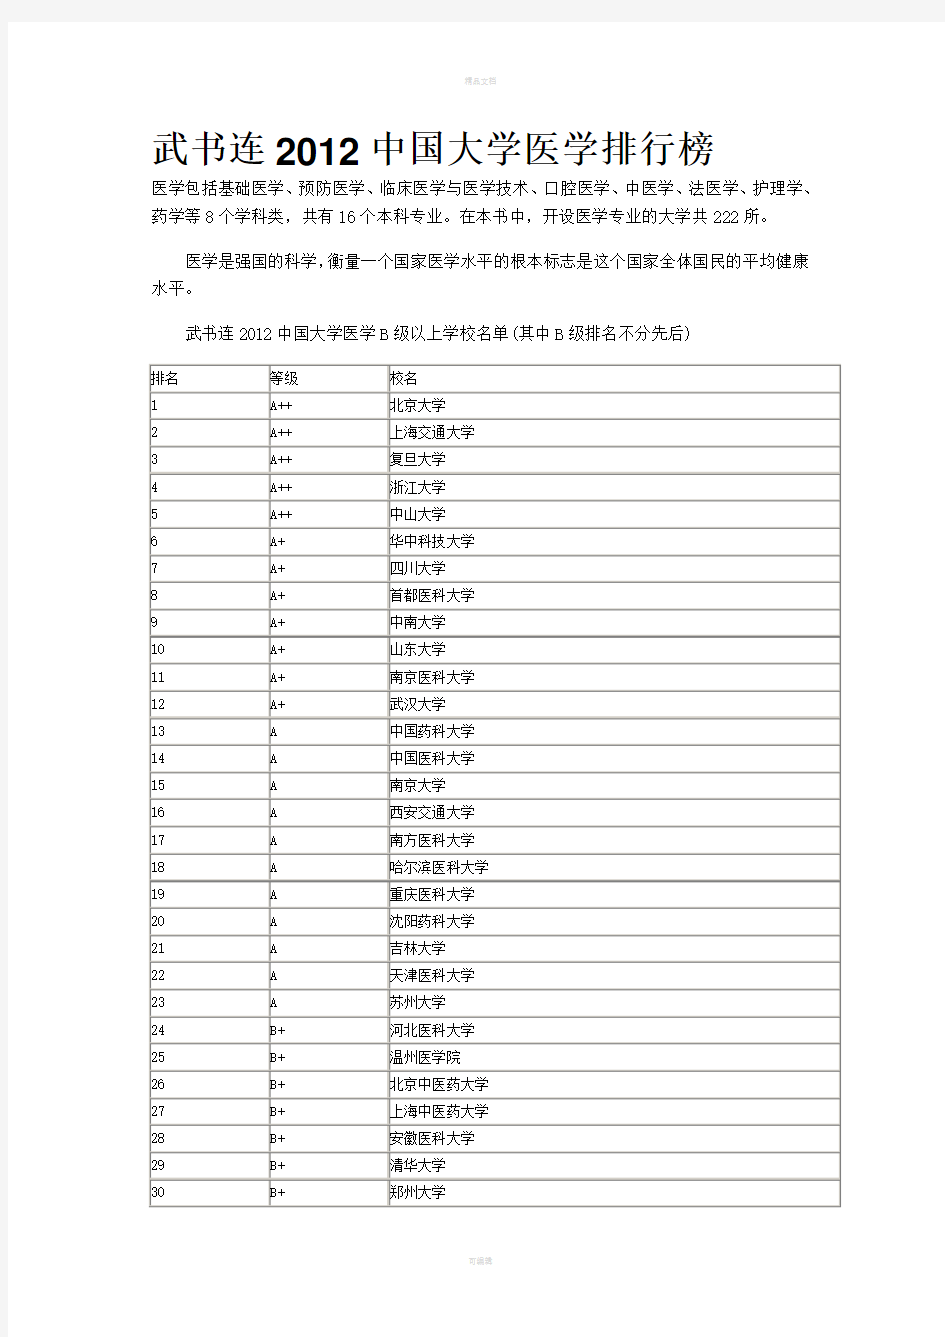 武书连2012中国大学医学排行榜